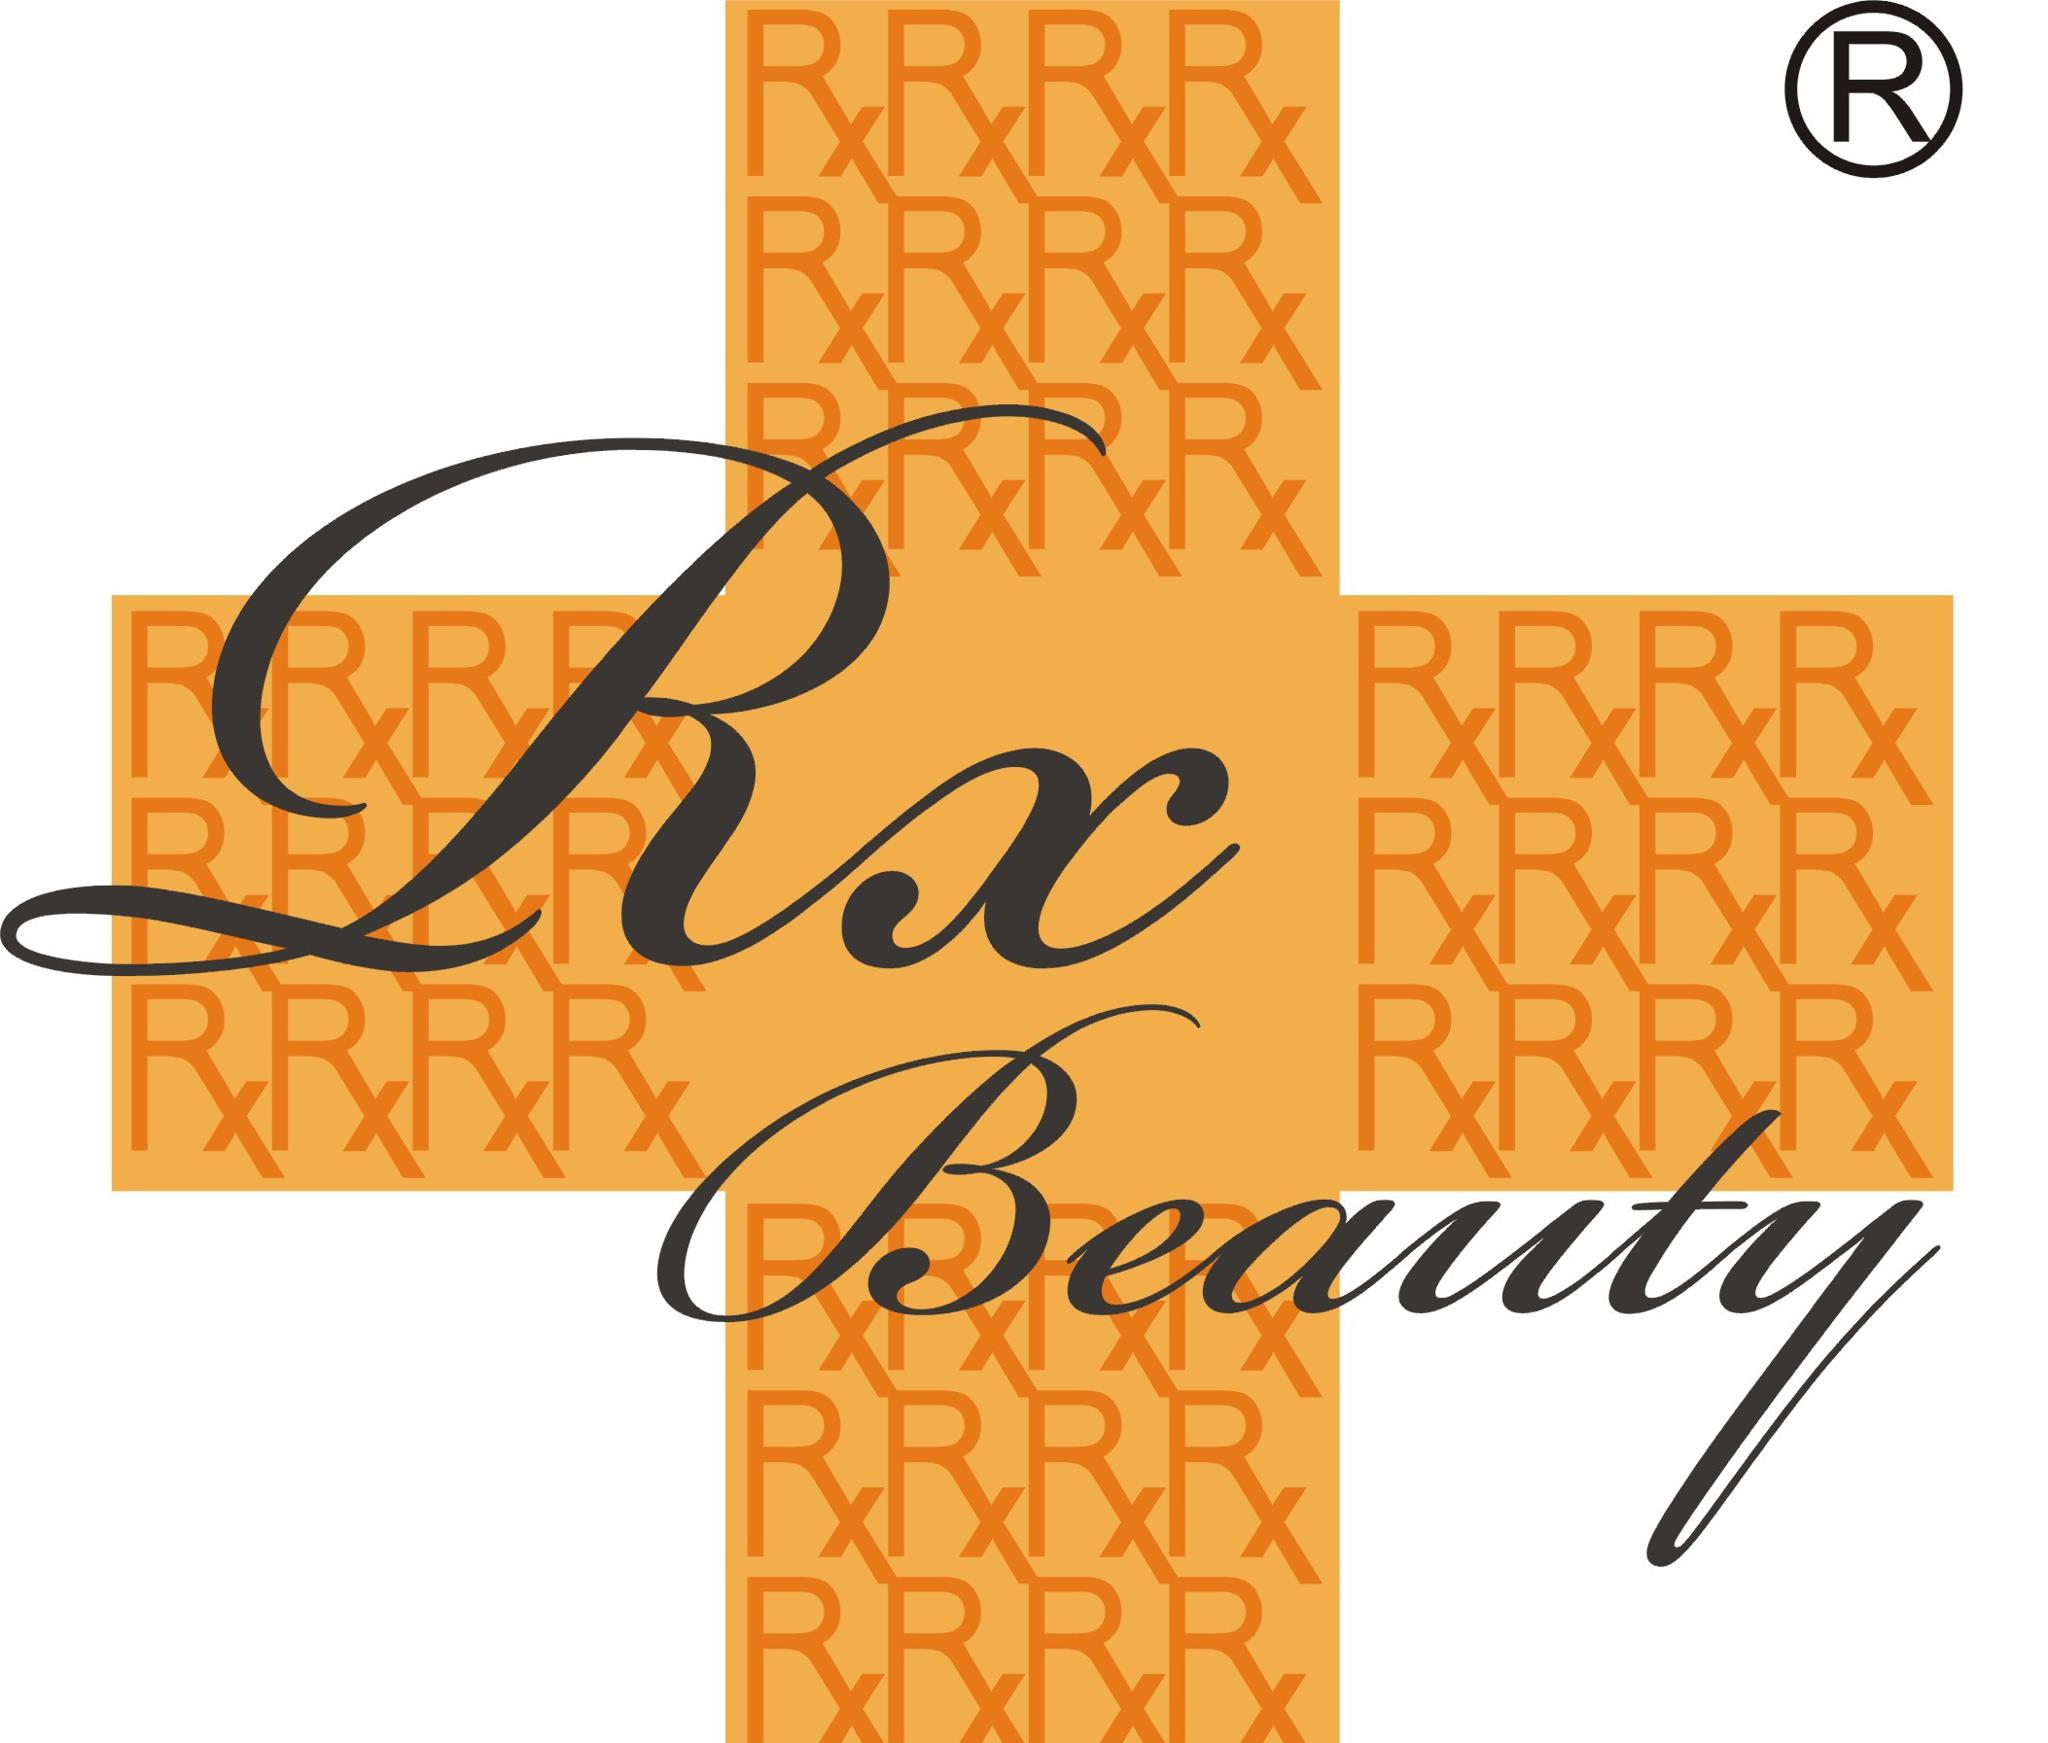 美容院 Beauty Salon: Rx Beauty (旺角店)